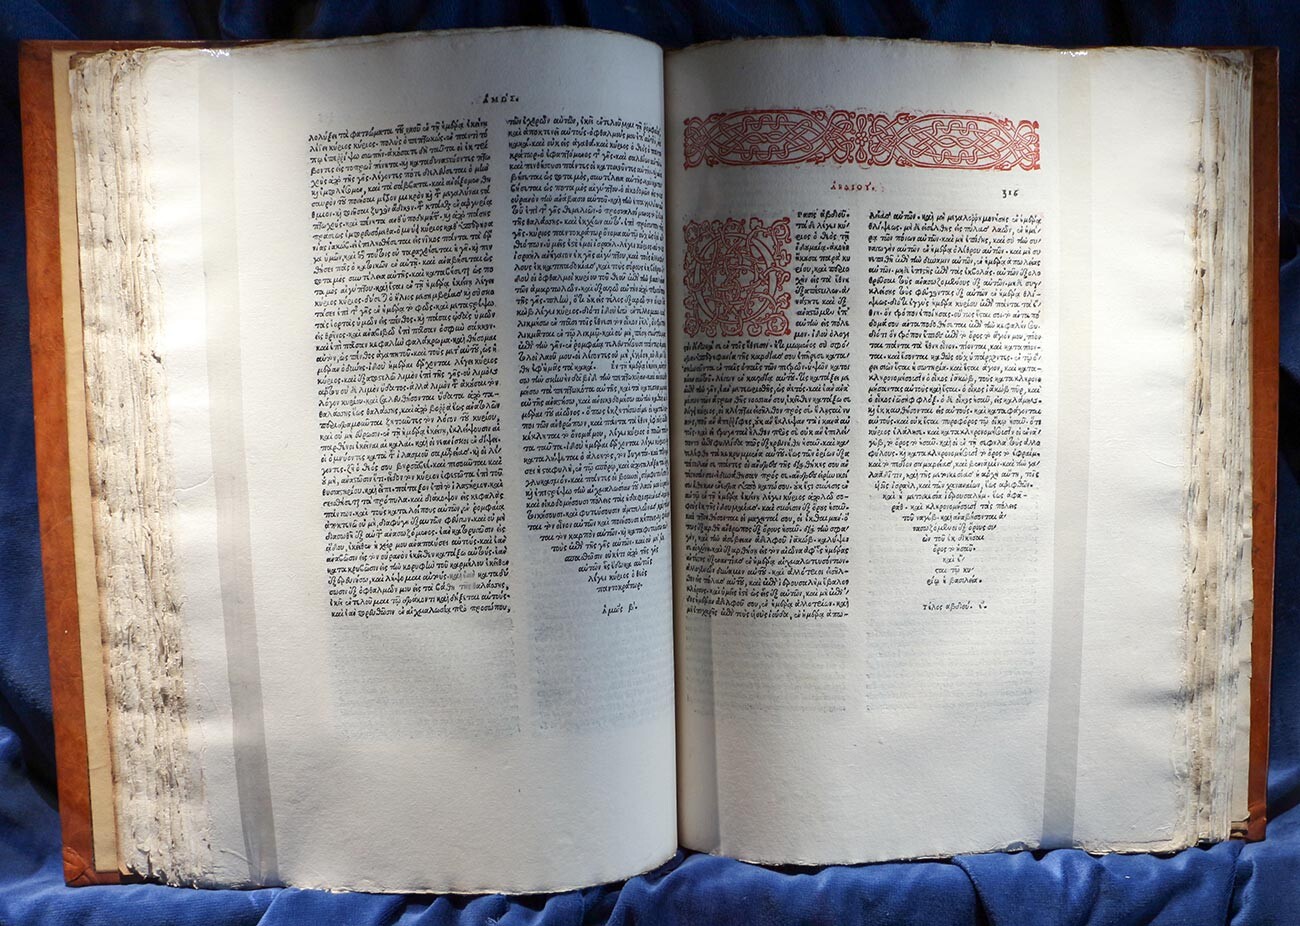 Double page de l'édition d'Alde l'Ancien de la Bible grecque complète, Venise, 1518. Bibliothèque Laurentienne